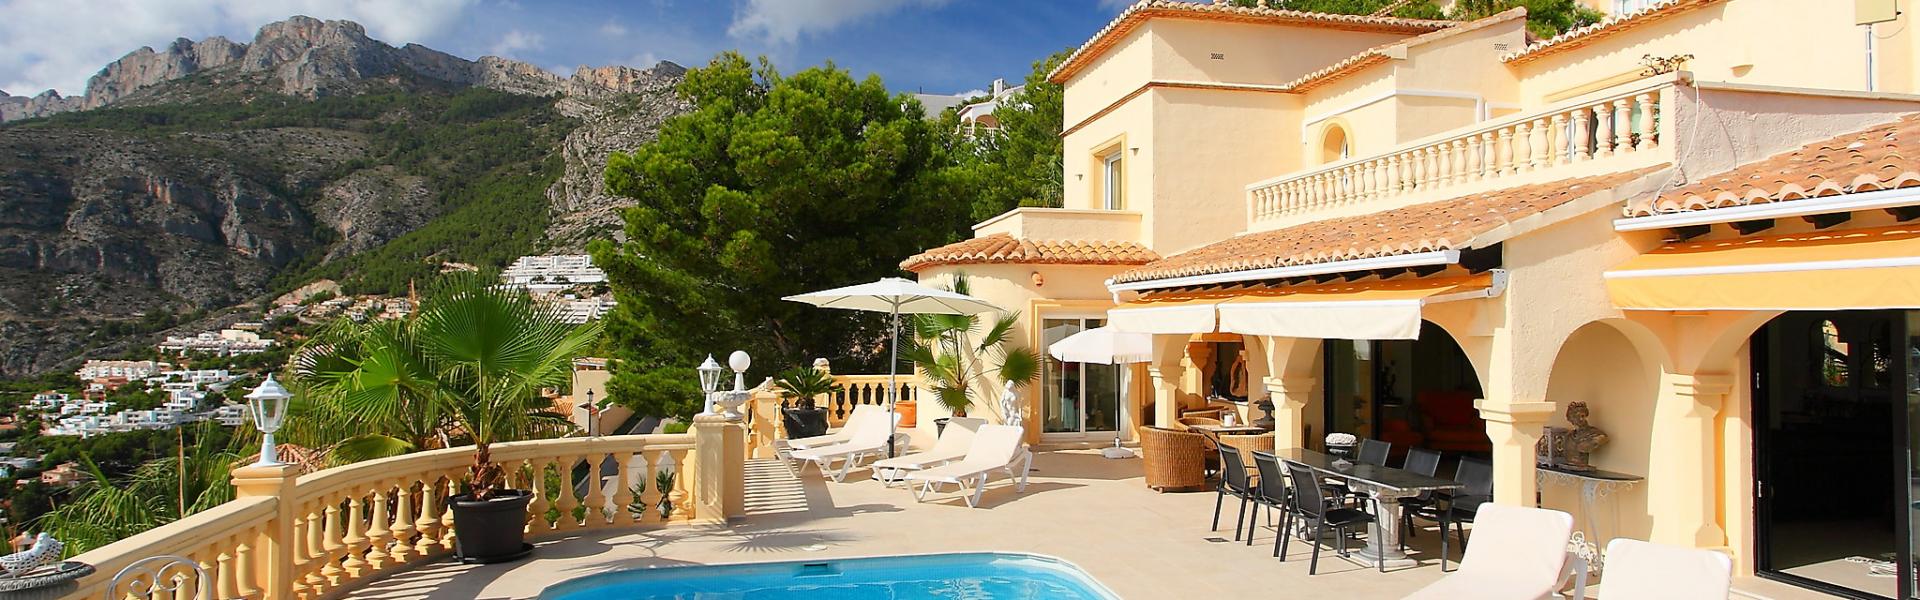 Vakantiehuis in Algarve met zwembad - HomeToGo